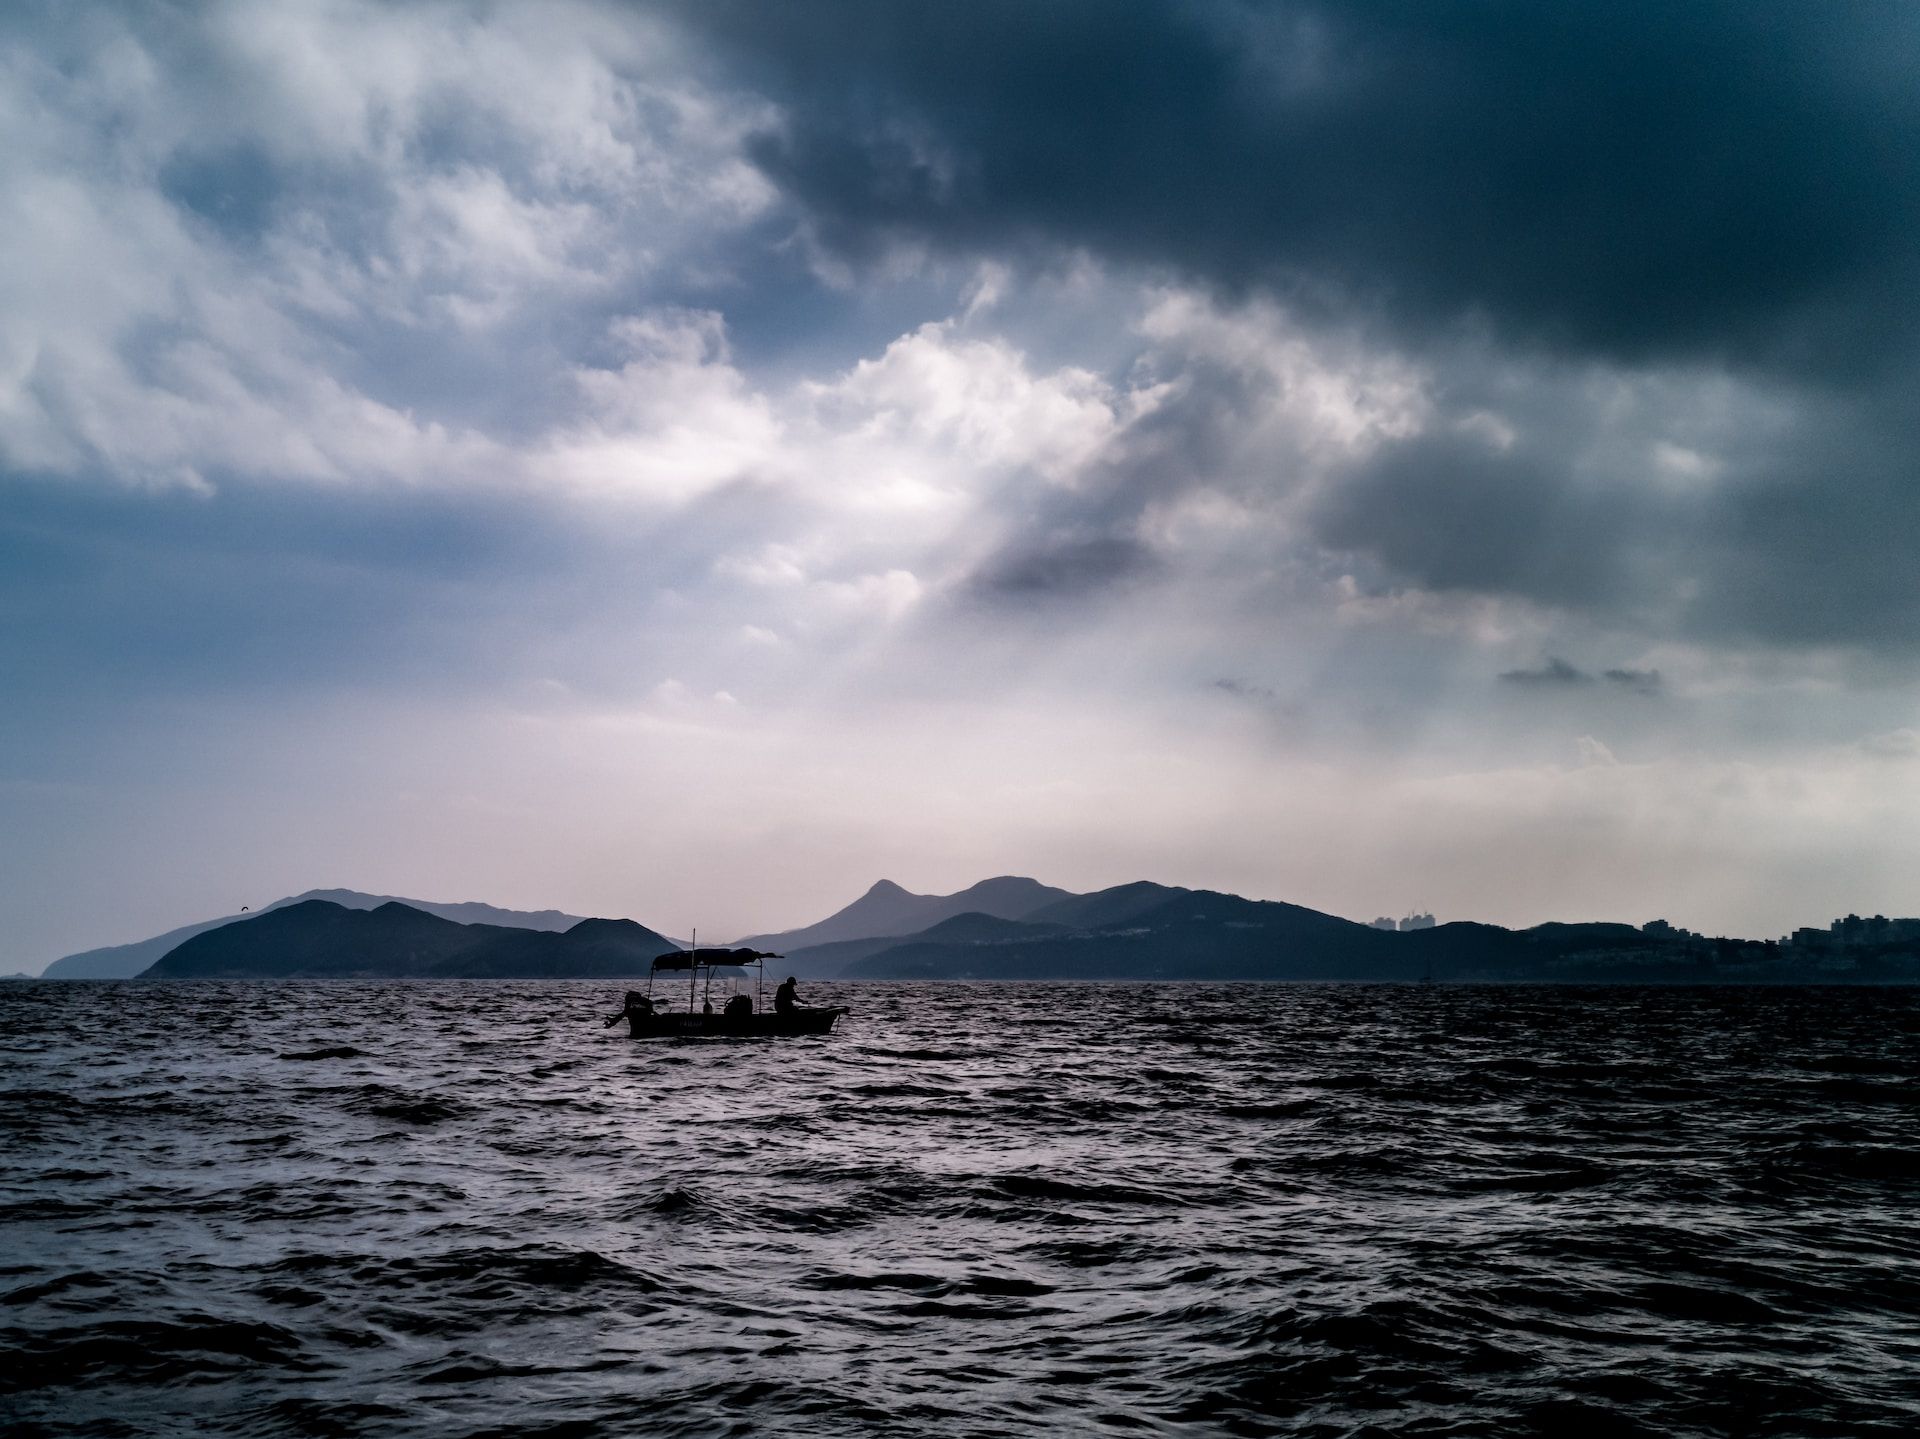 bateau de pêcheur sur la mer avec un orage qui arrive - Photo by Wai Siew on https://unsplash.com/photos/aV44liX_9zg